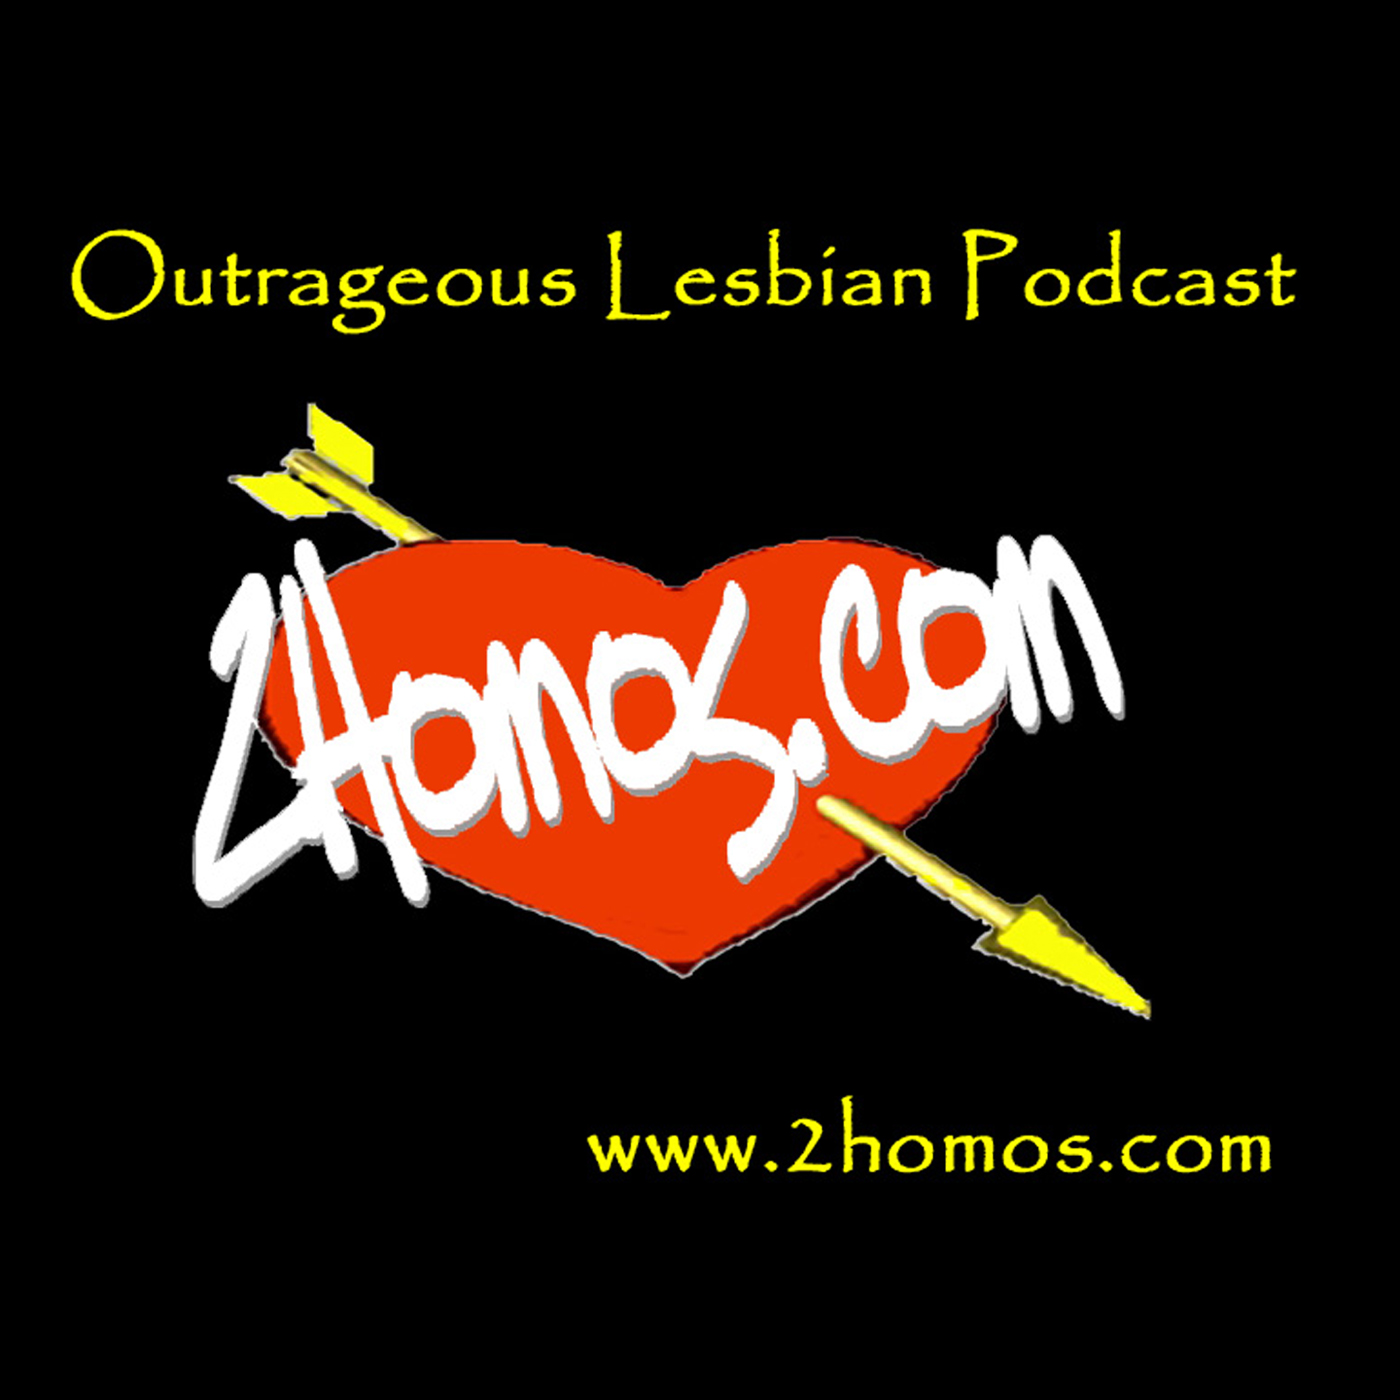 Lesbian Podcast 70